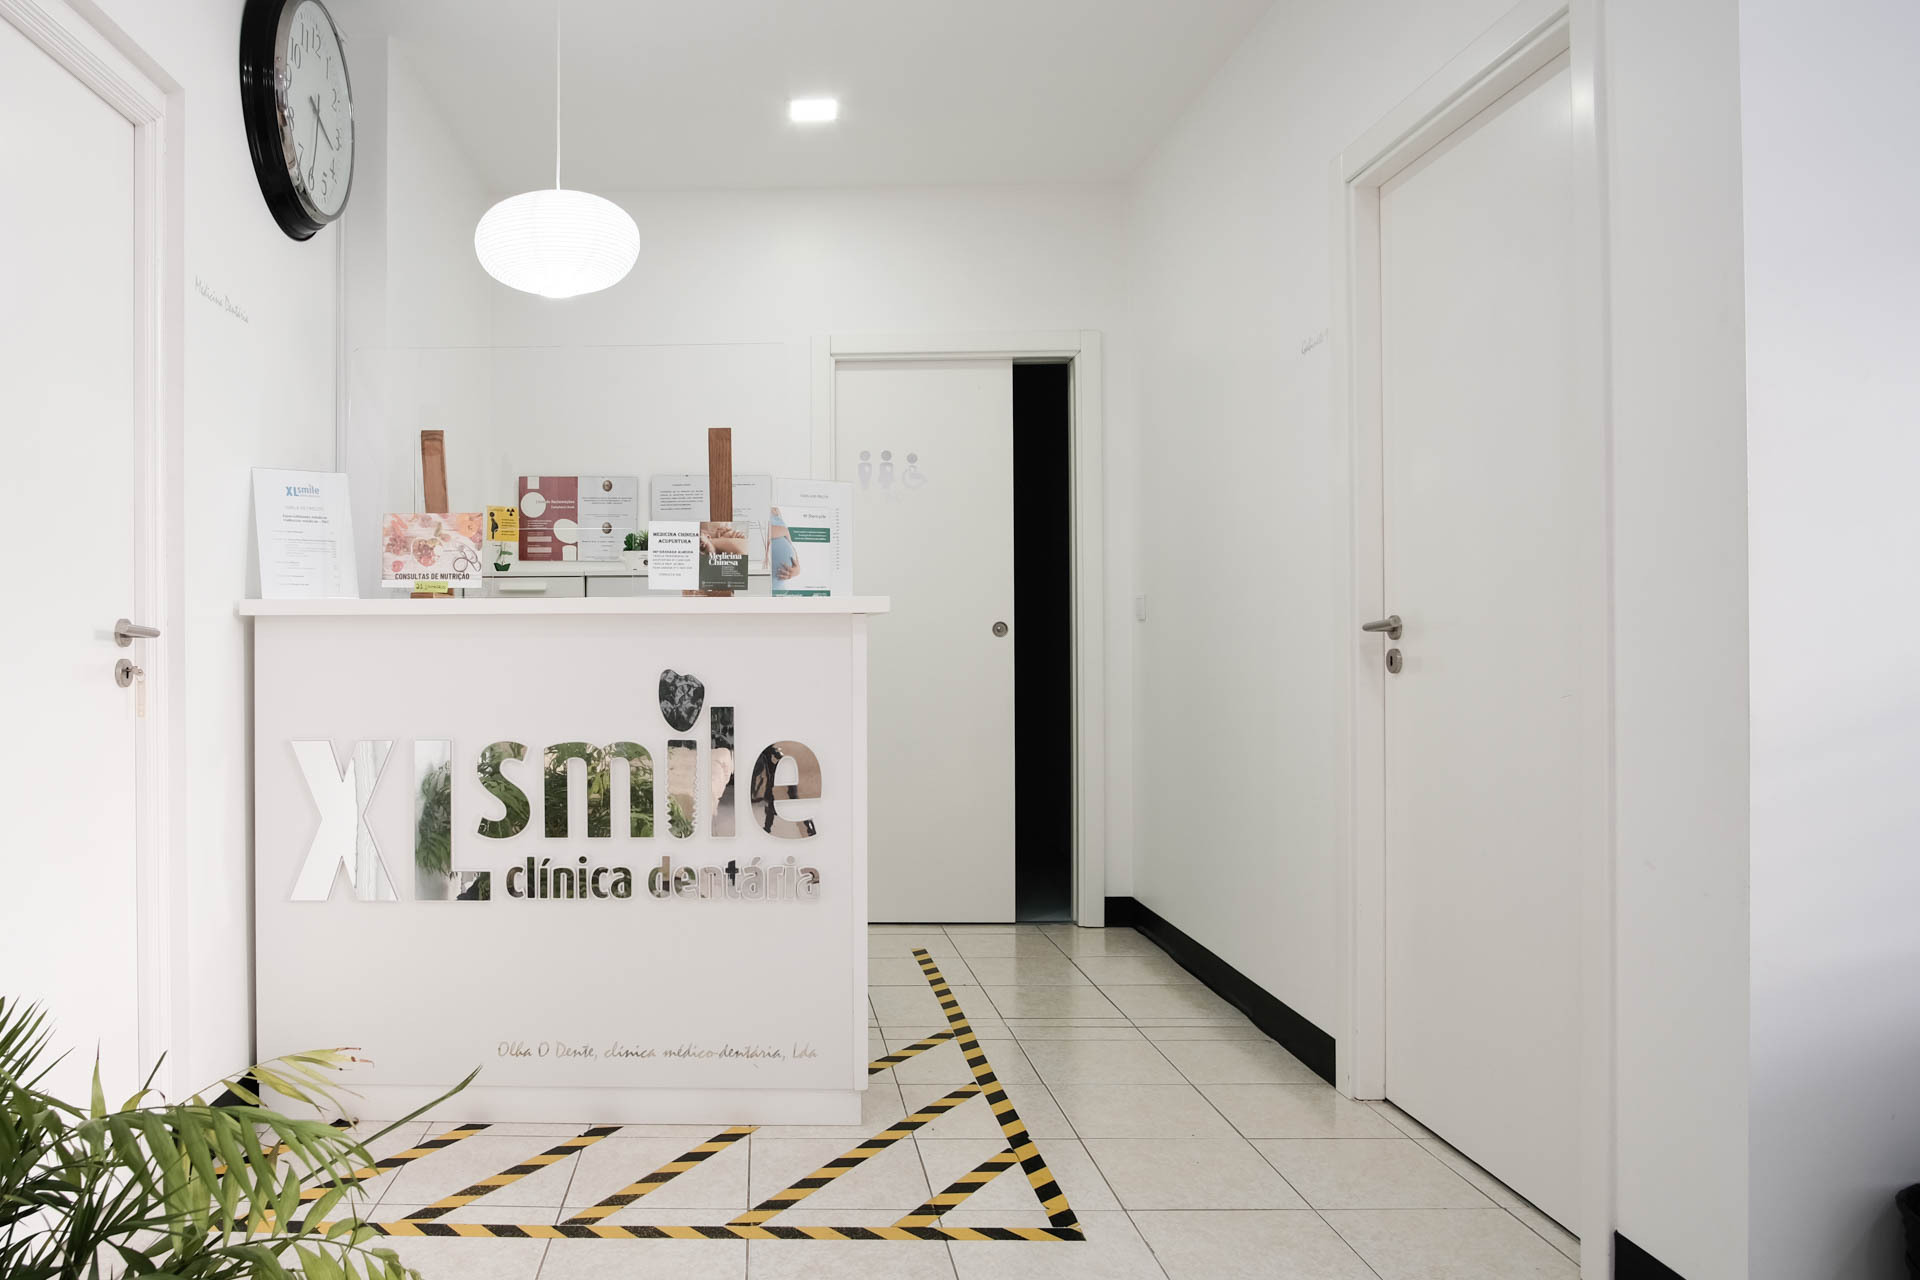 XL Smile - Clinica dentária Seia